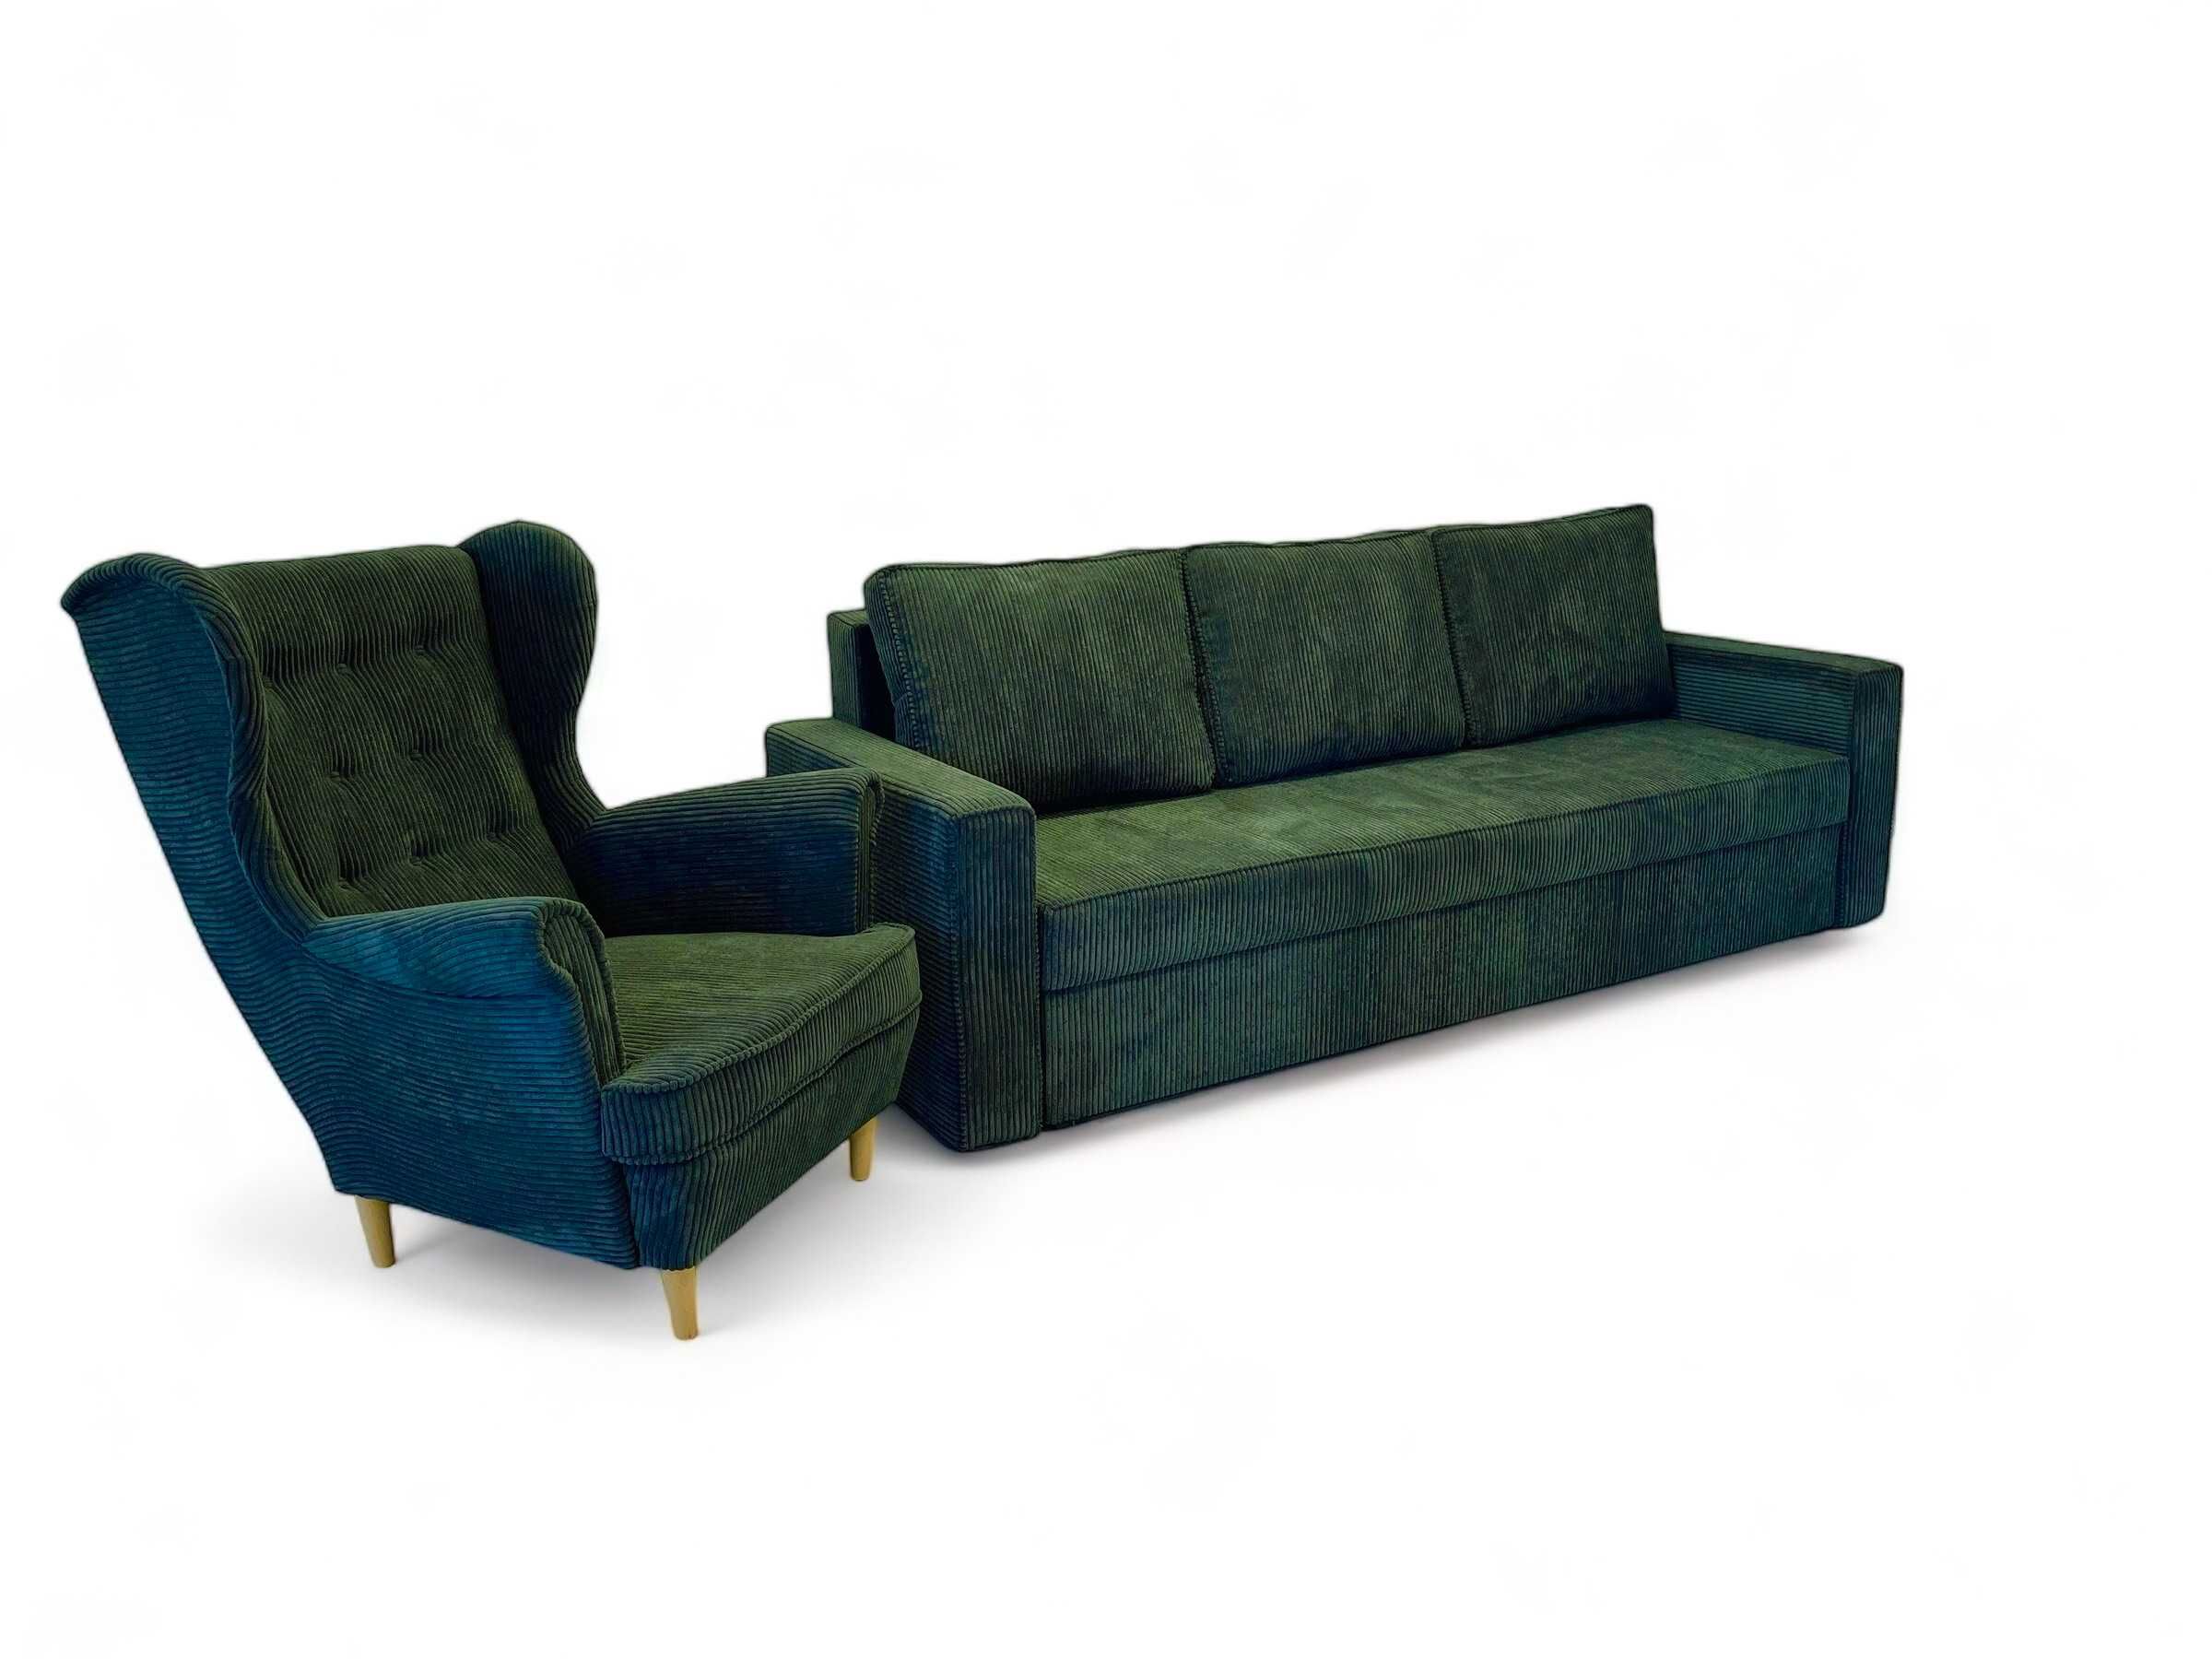 Zestaw komplet wypoczynkowy kanapa Sofia + fotel Uszak. Wersalka, sofa